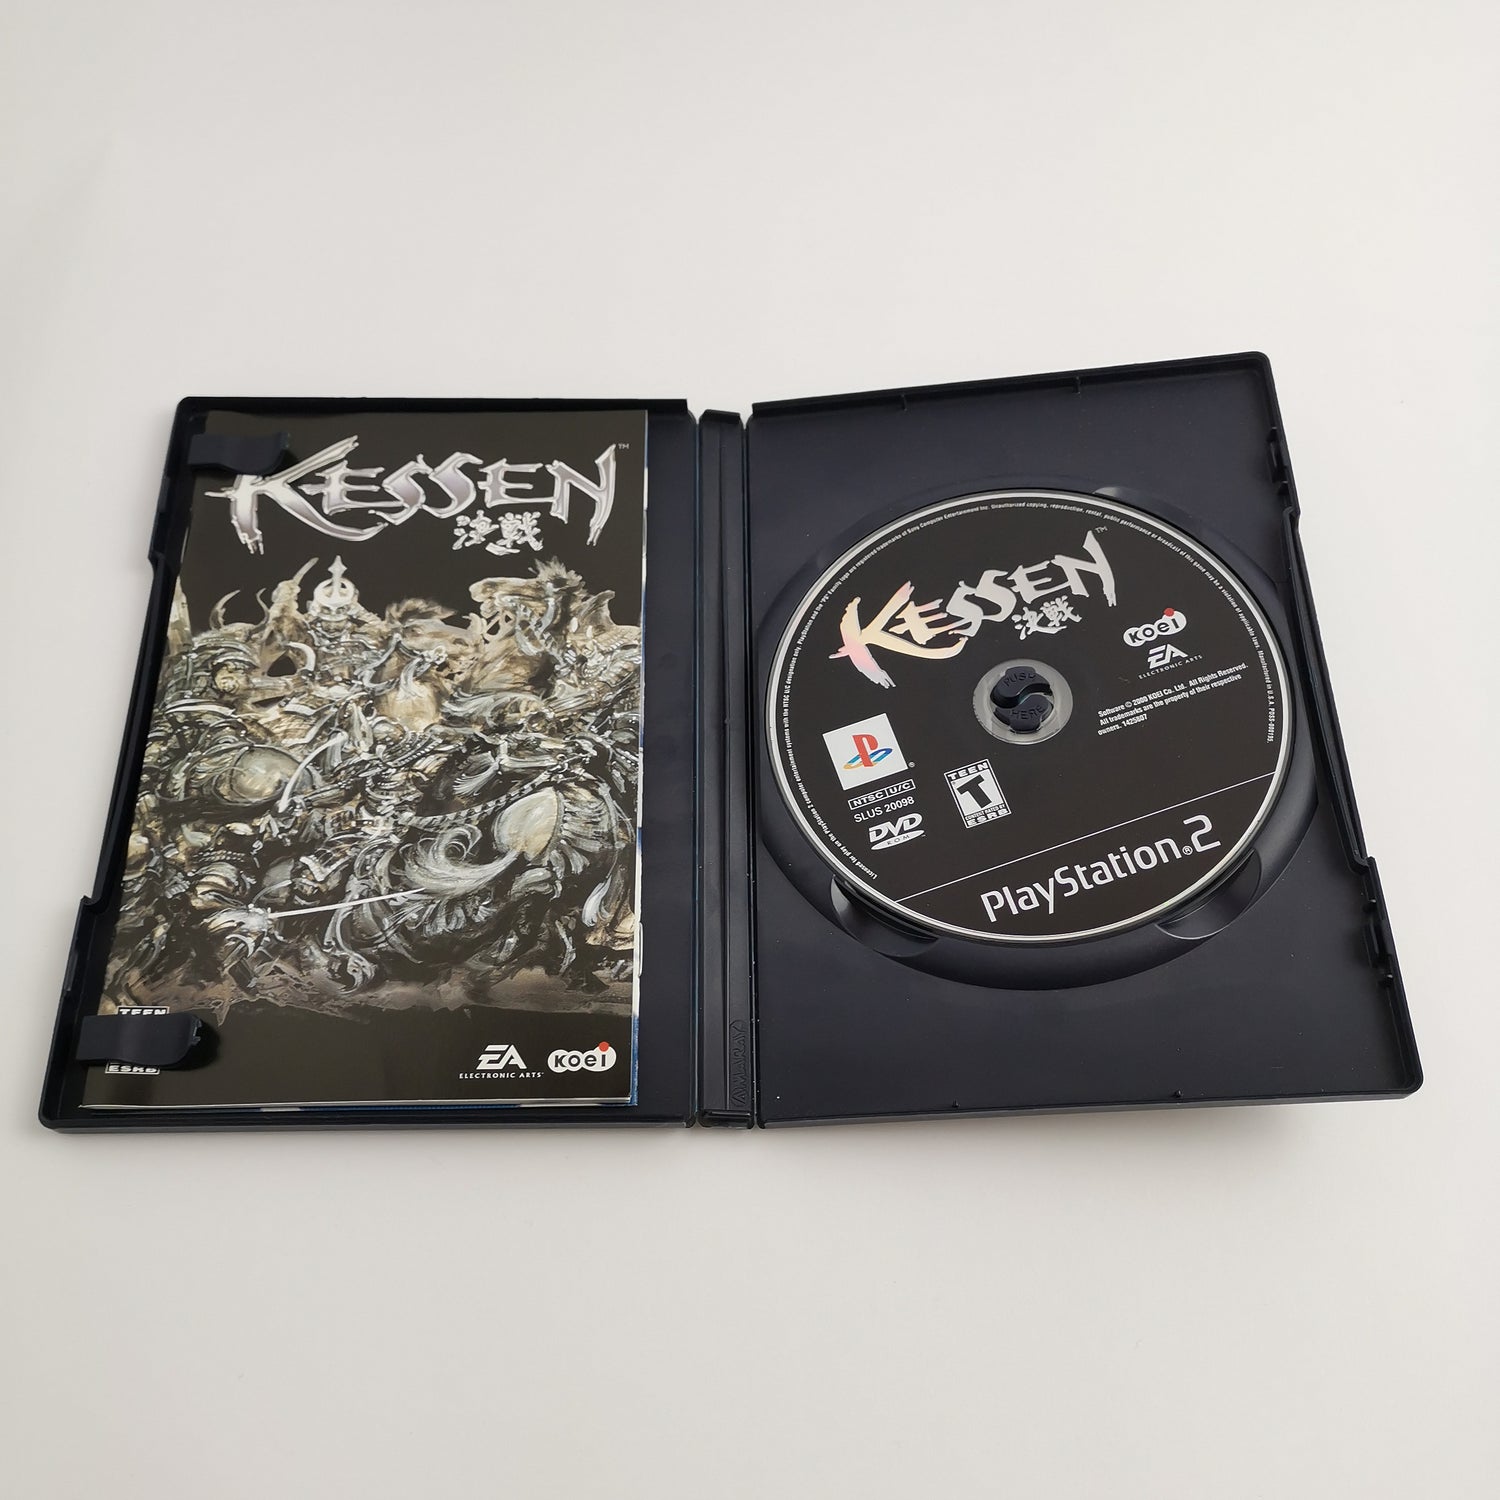 Sony Playstation 2 Spiel : Kessen | PS2 - OVP NTSC-J JAPAN Version